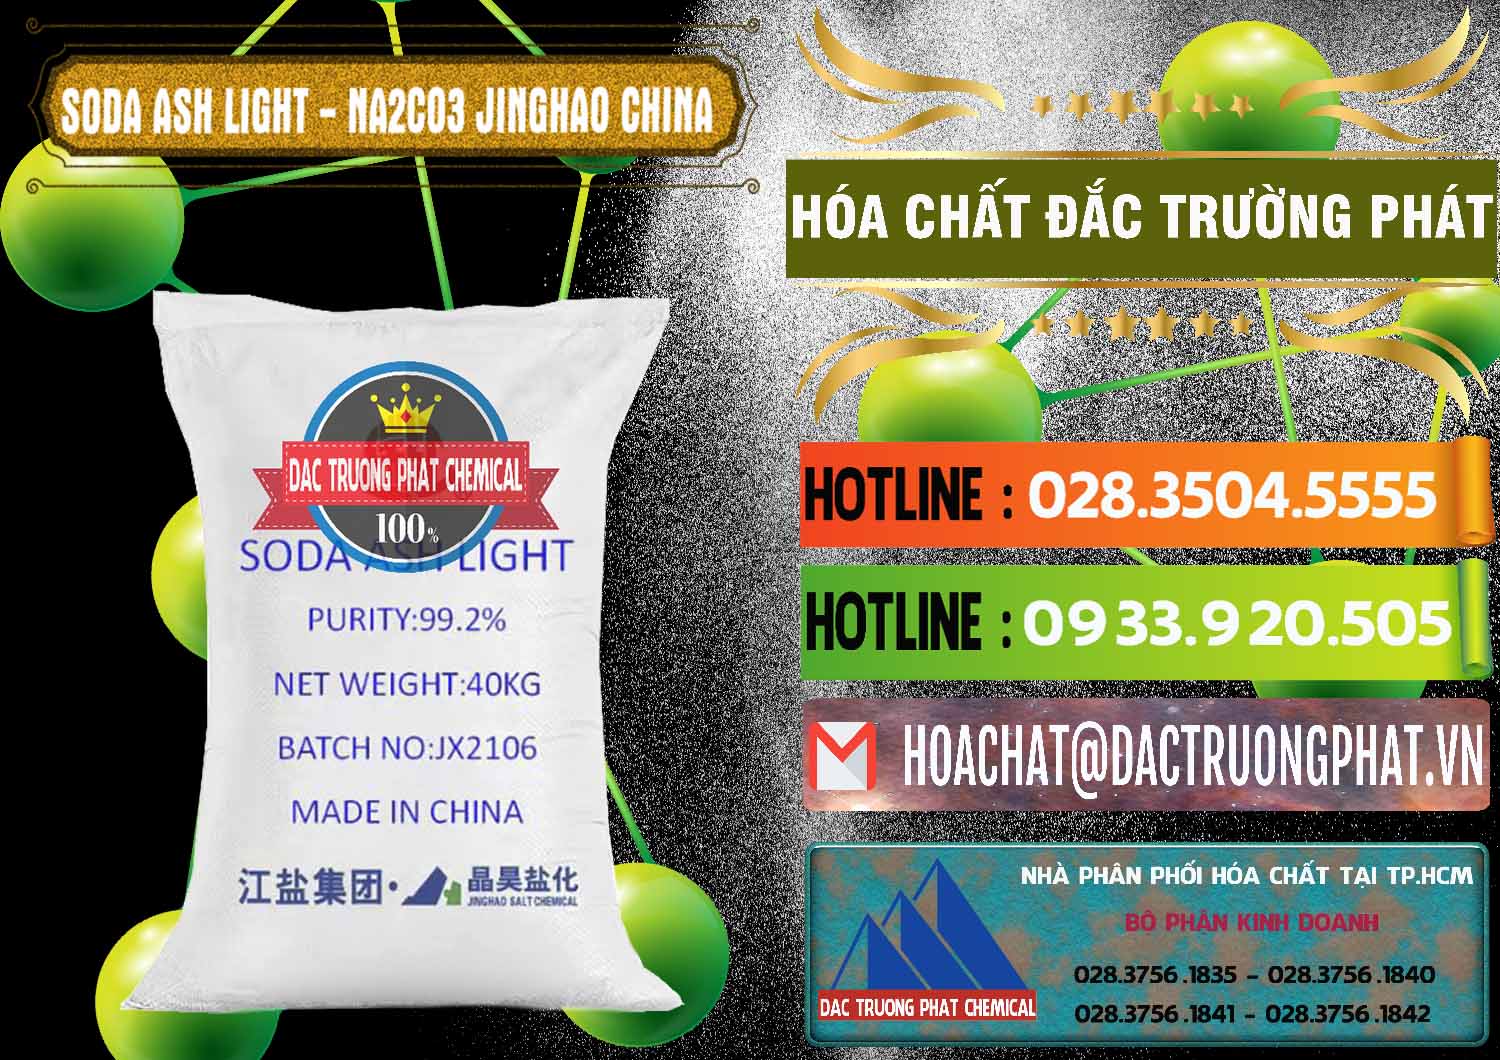 Công ty chuyên phân phối & bán Soda Ash Light - NA2CO3 Jinghao Trung Quốc China - 0339 - Nơi chuyên nhập khẩu & cung cấp hóa chất tại TP.HCM - cungcaphoachat.com.vn